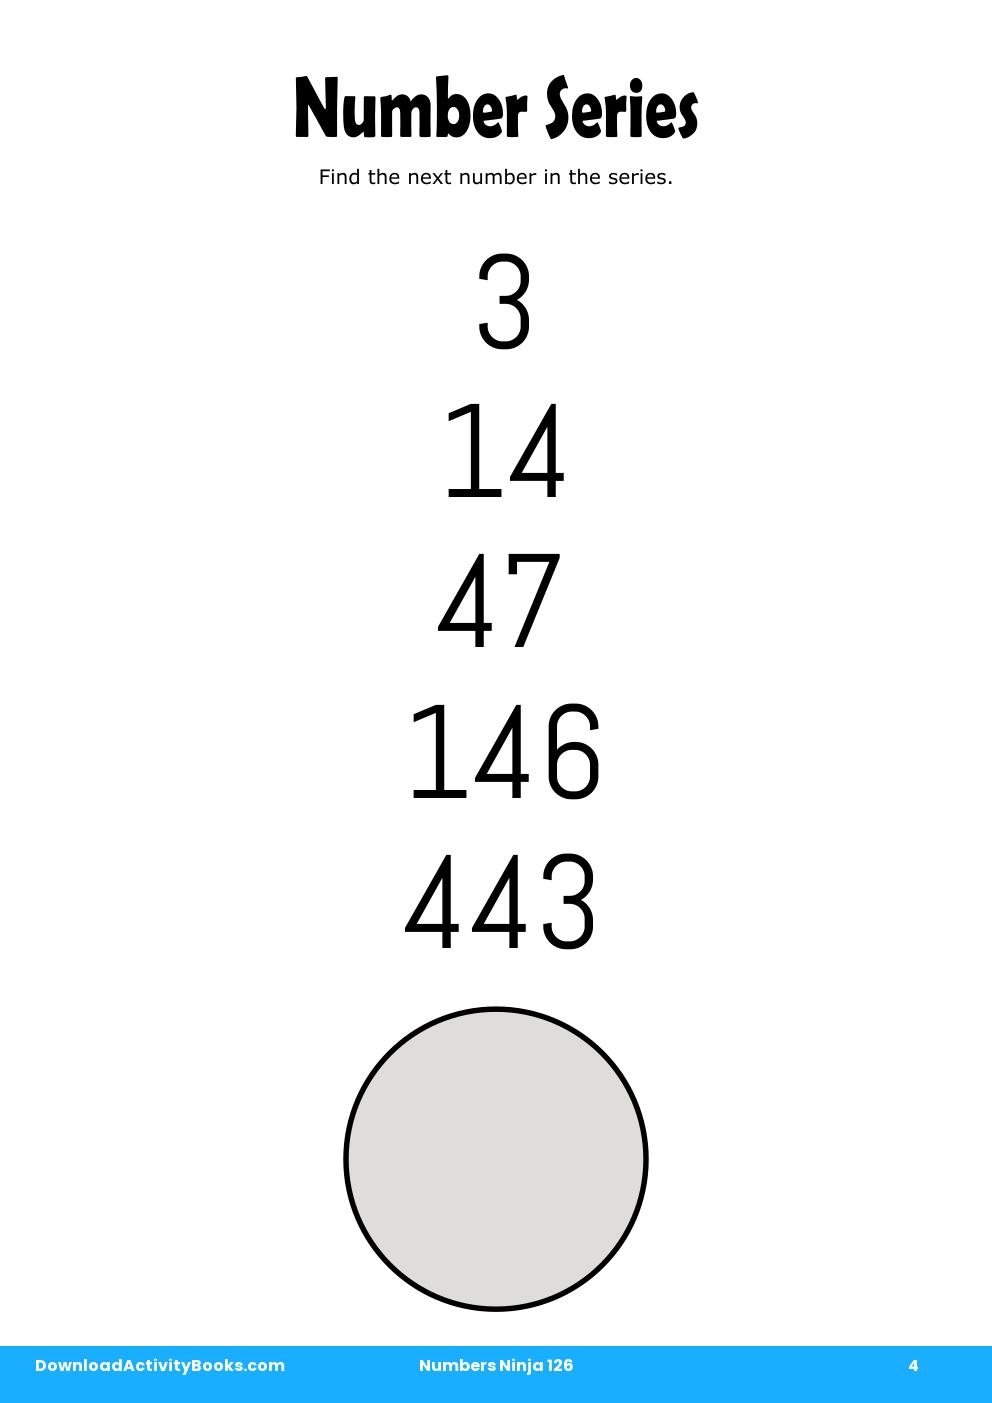 Number Series in Numbers Ninja 126